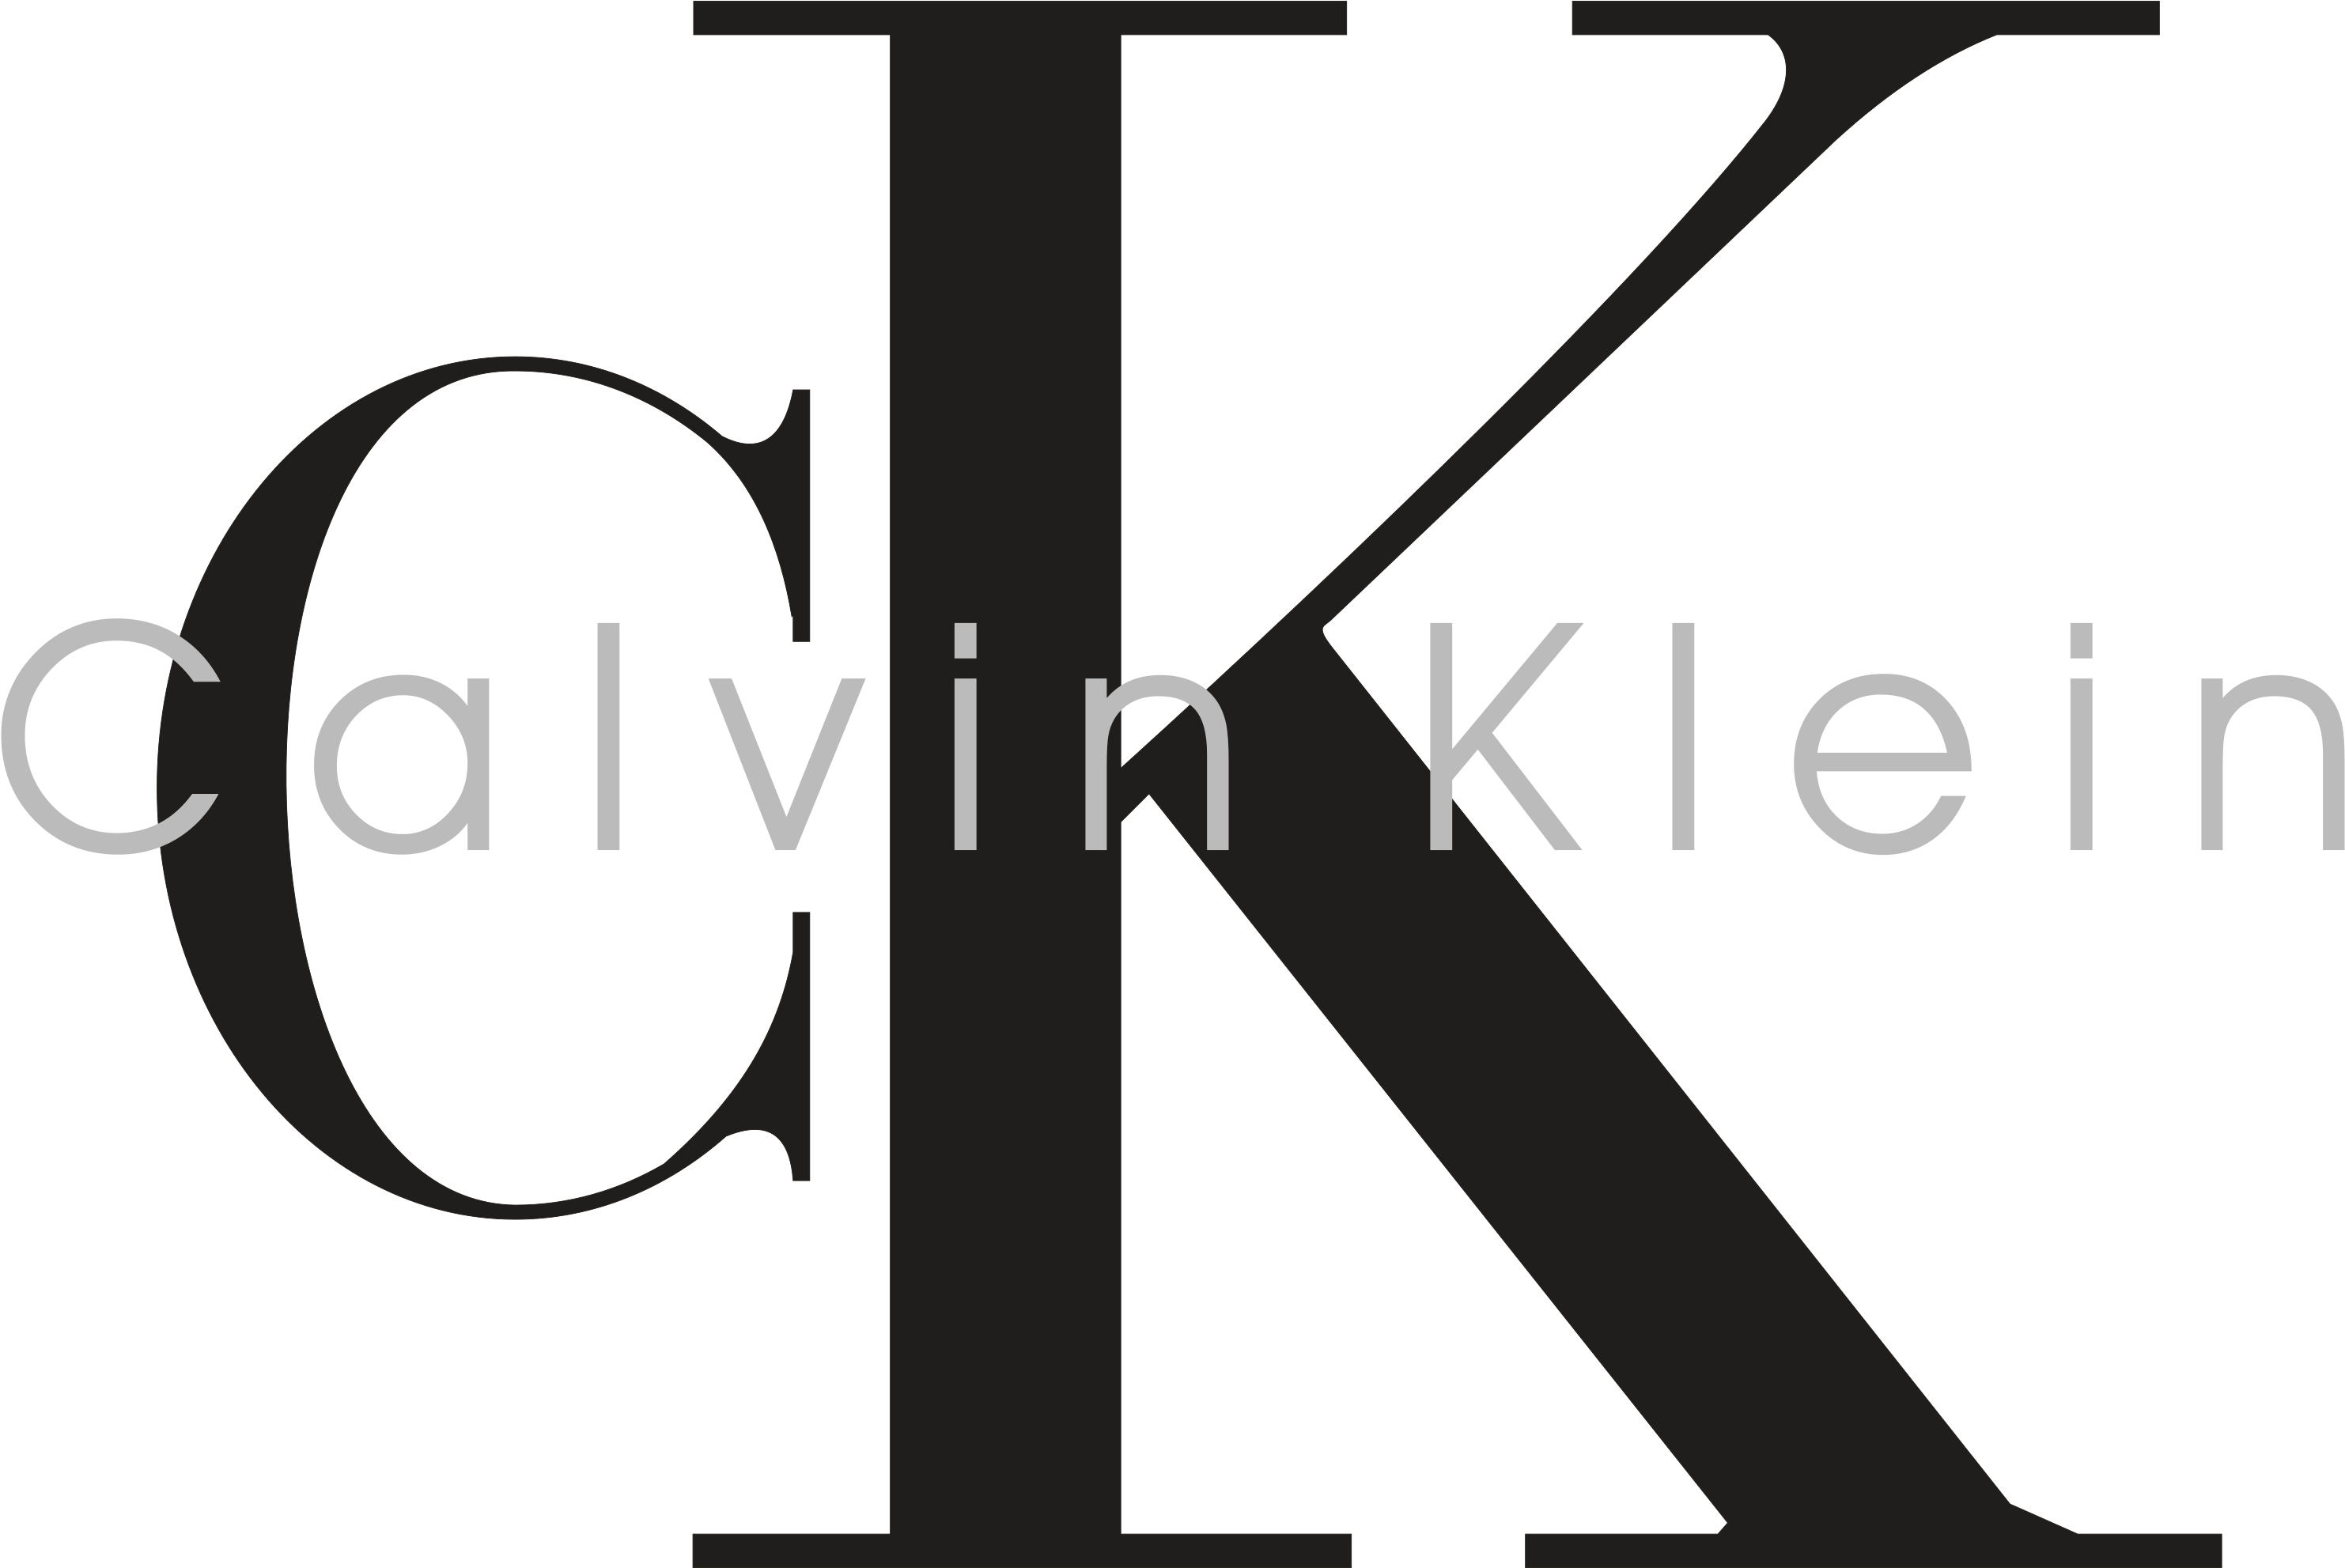 Ck calvin klein logo PNG image Fond